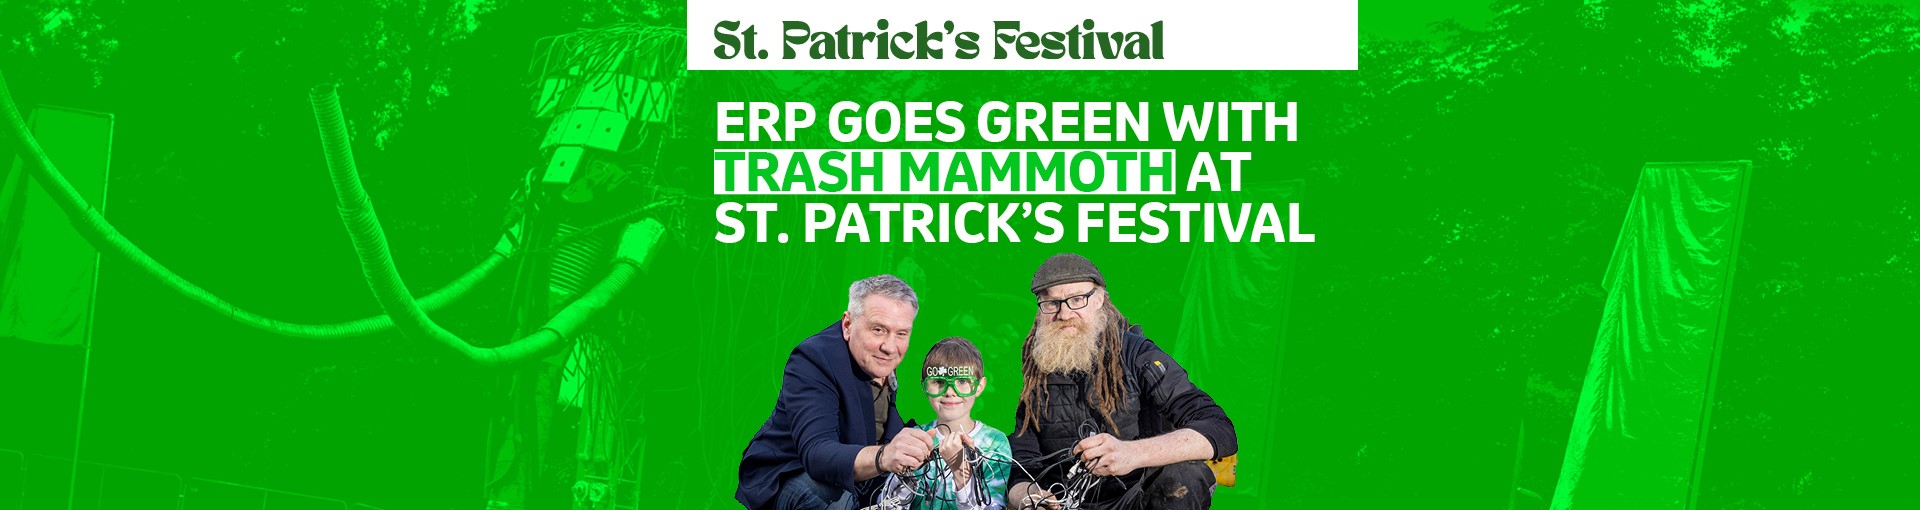 ERP St Patricks Trash Mammoth